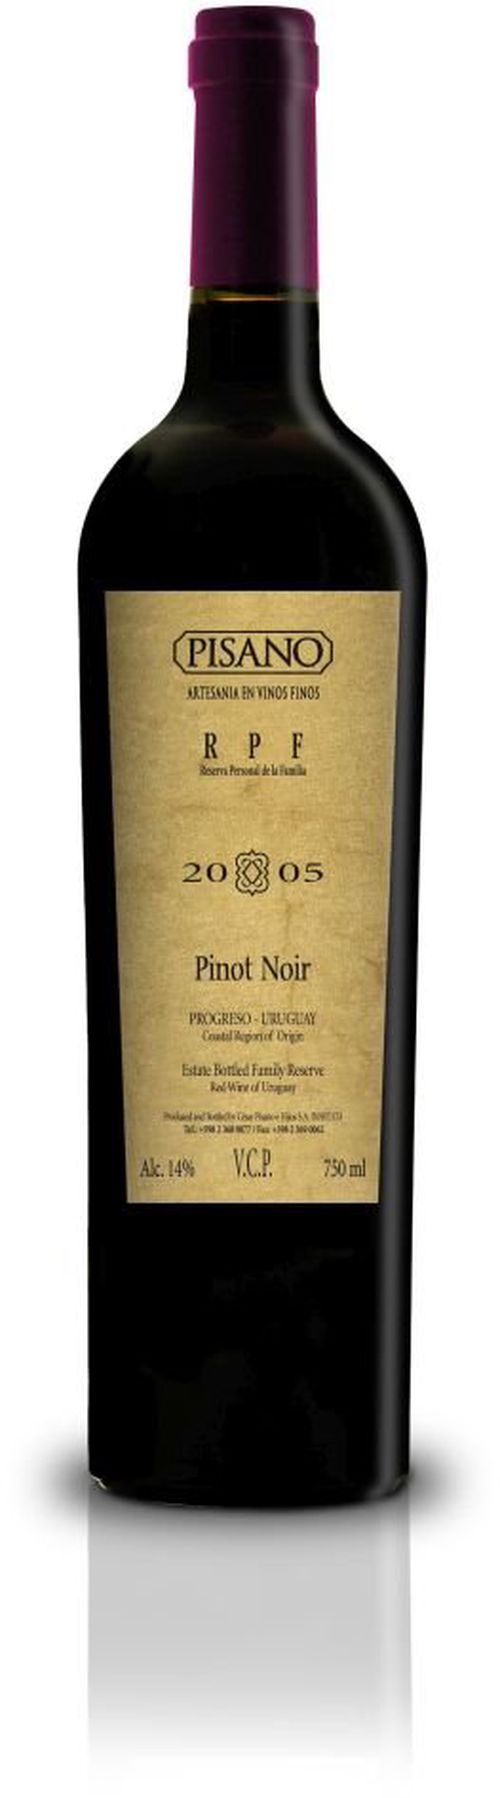 Pisano Pinot Noir Reserva RPF 2013 0,75l 13,5%